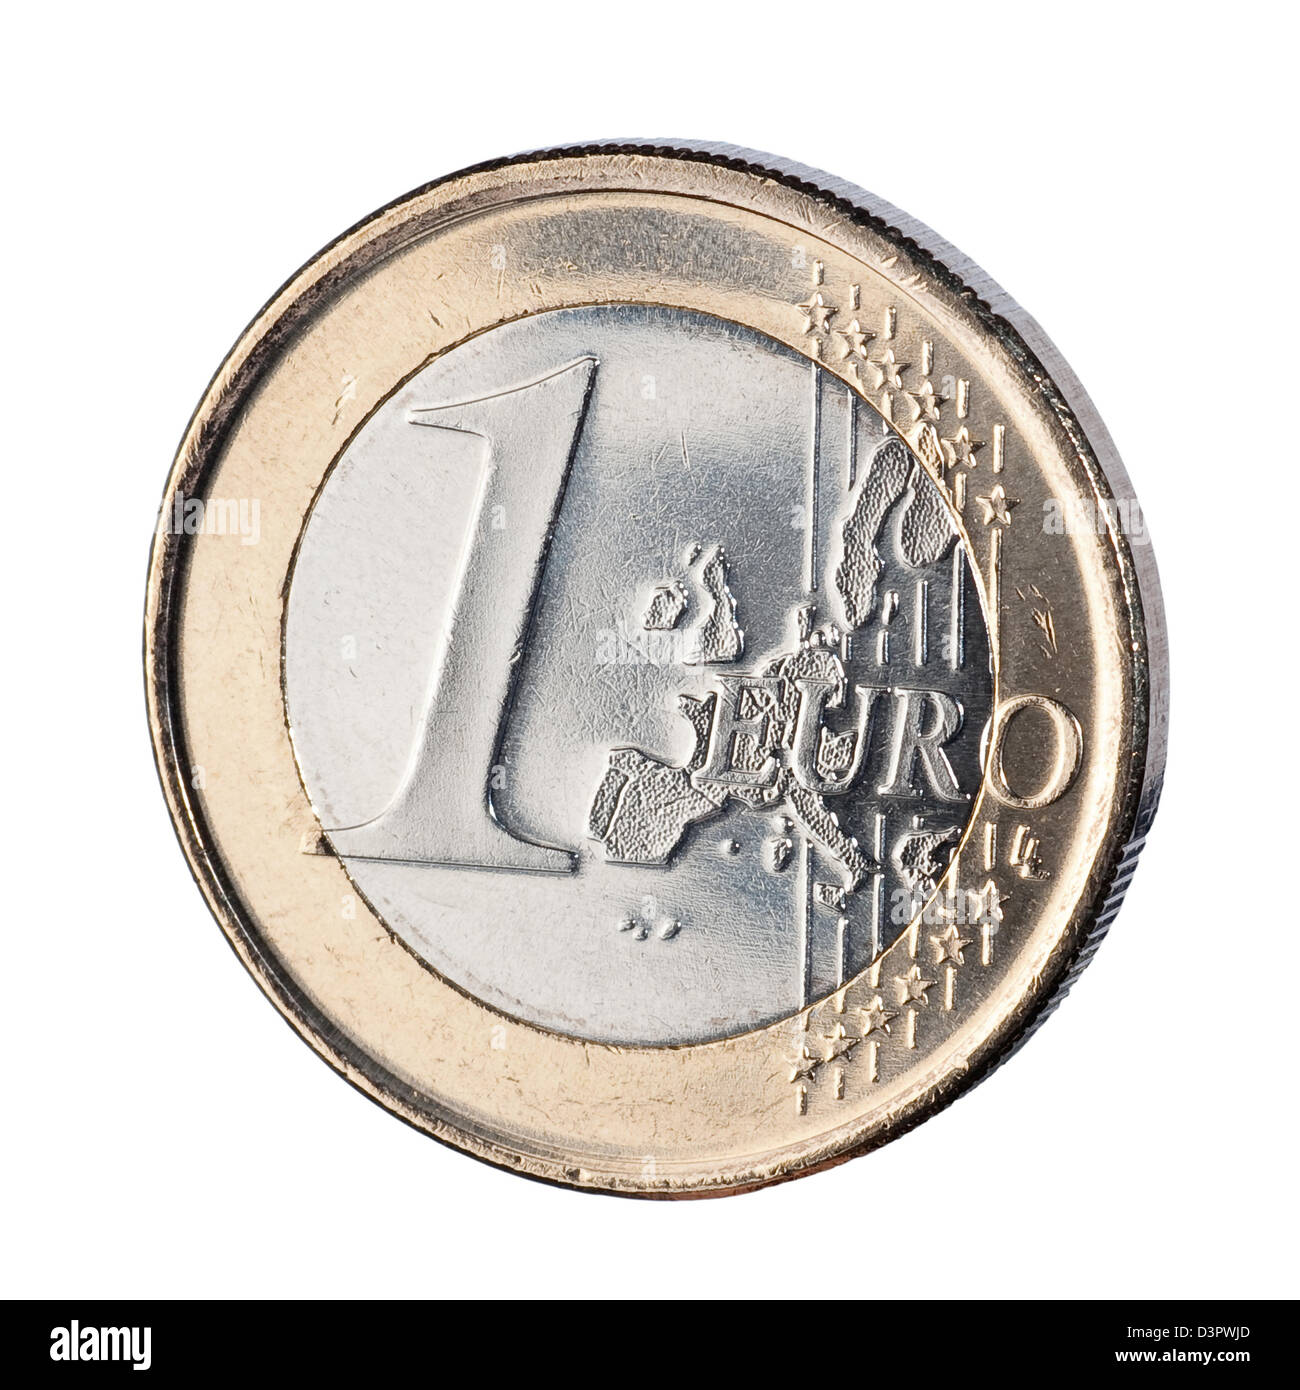 Hamburg, Germany, a one-euro coin Stock Photo